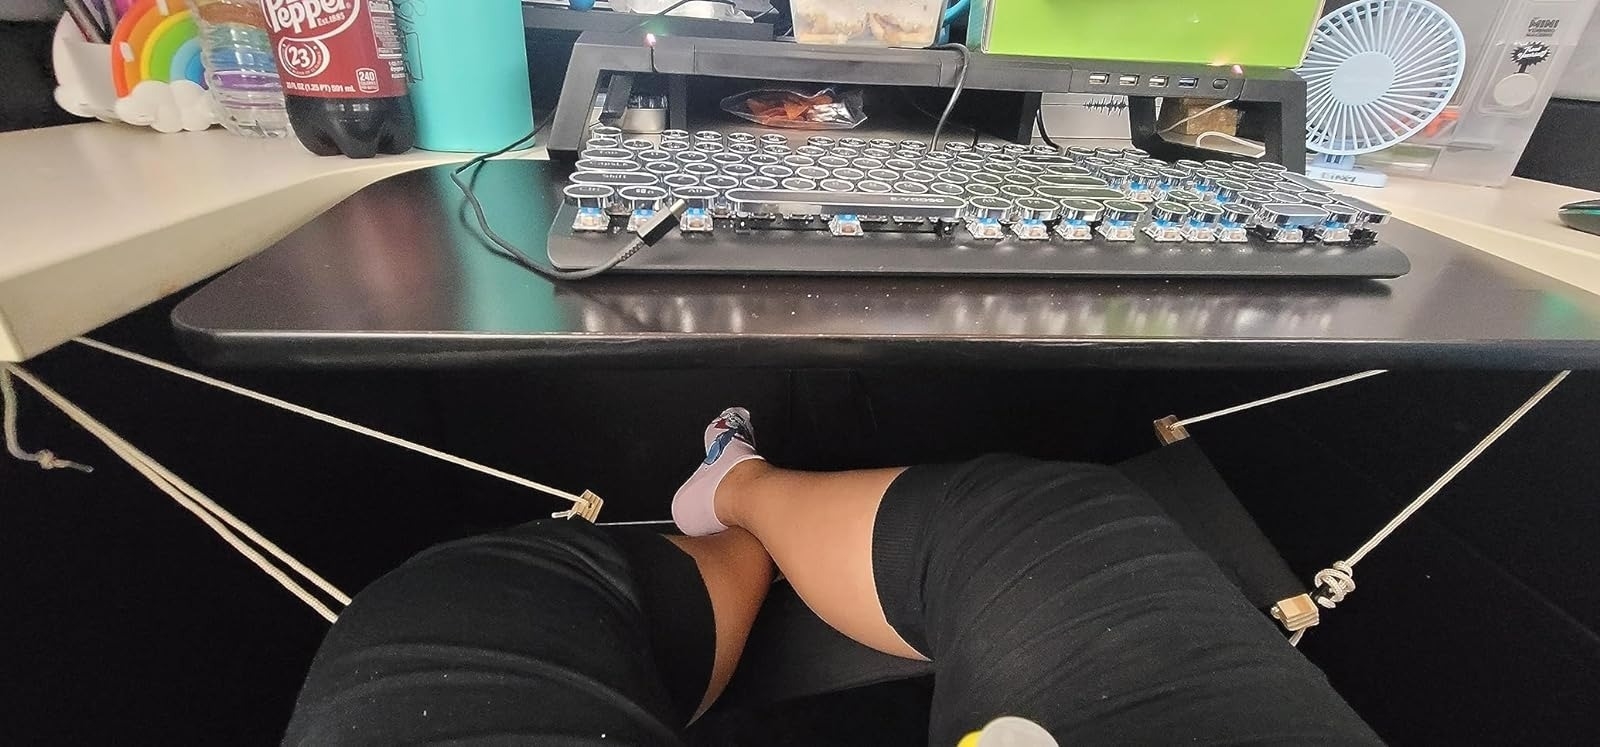 reviewer resting feet on desk-sized foot hammock